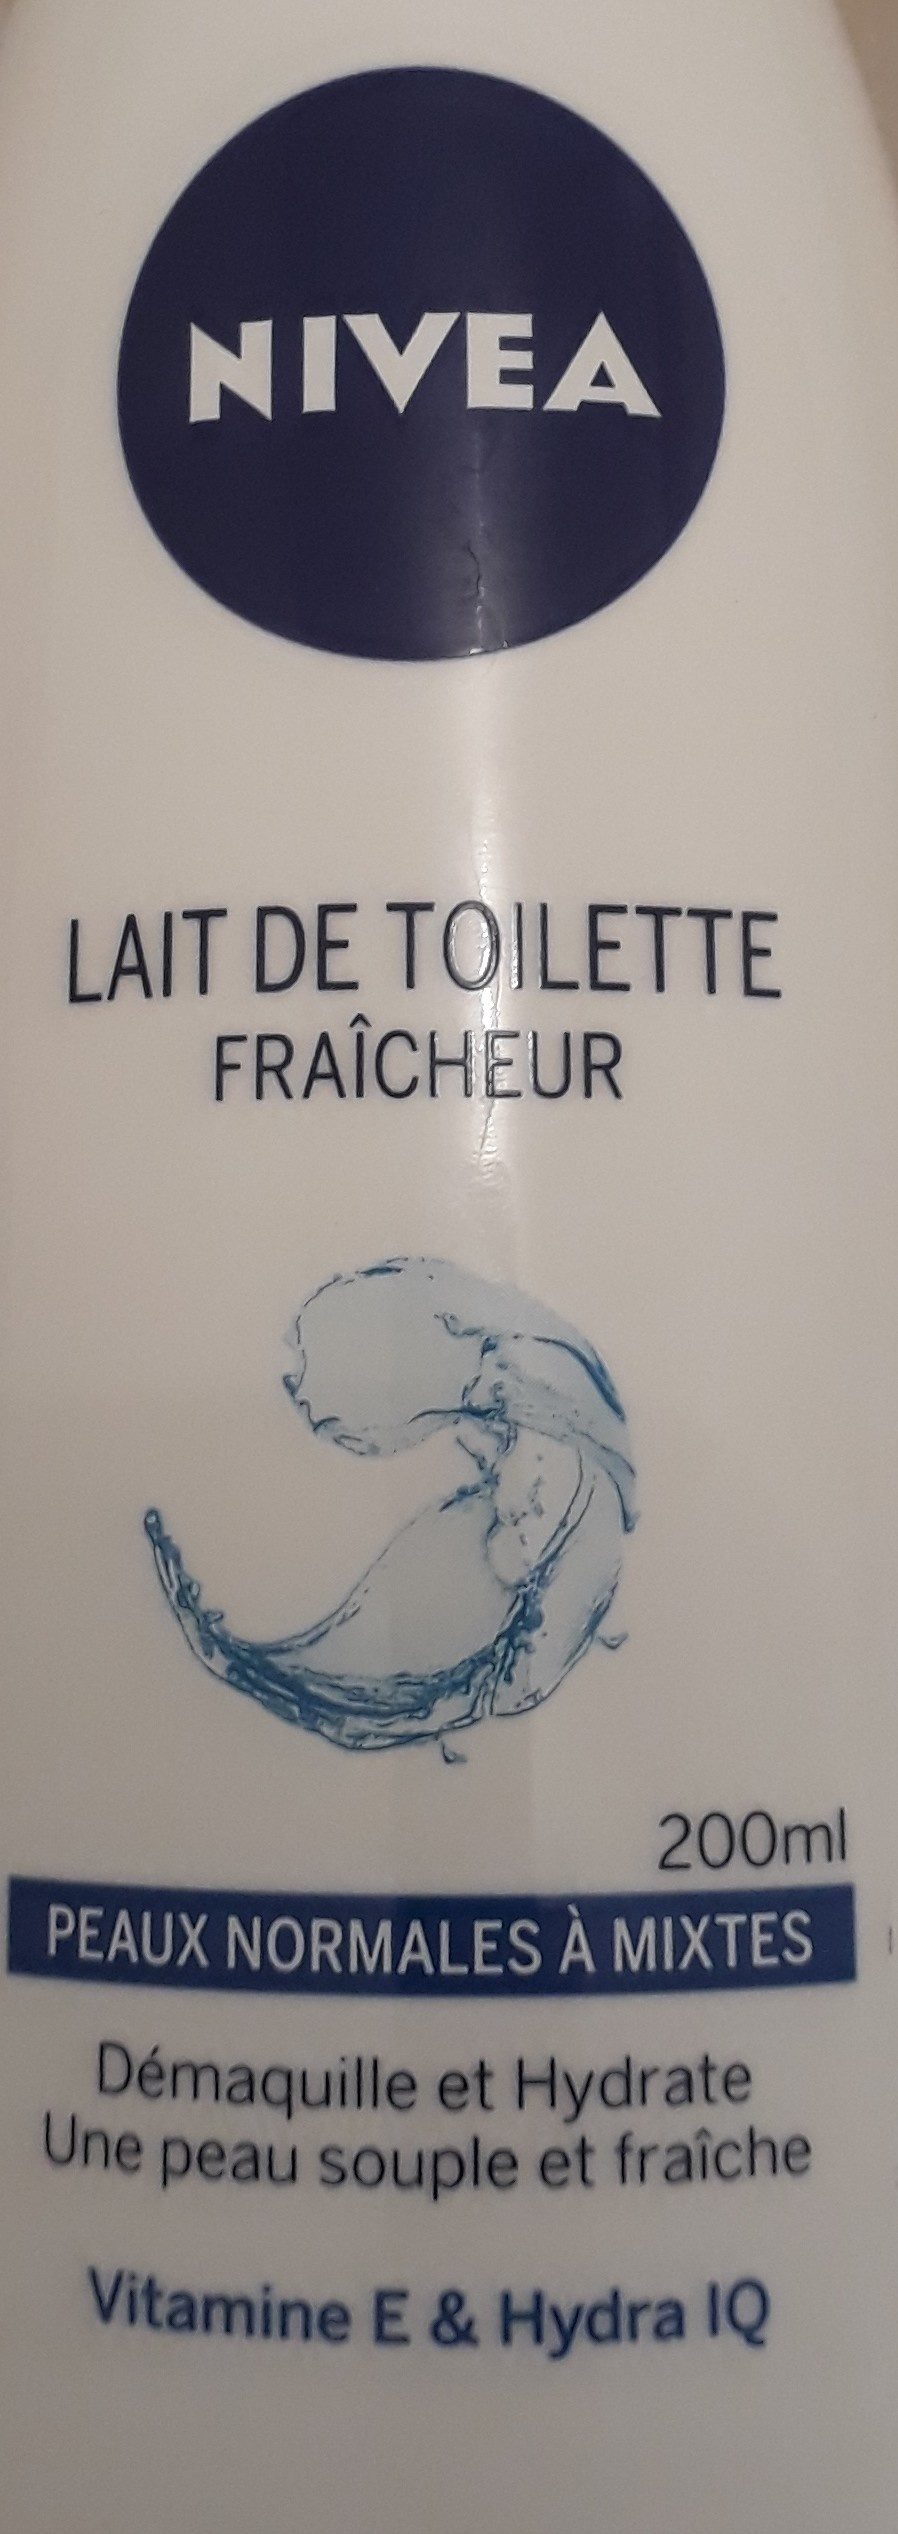 Lait de toilette fraîcheur - Product - en